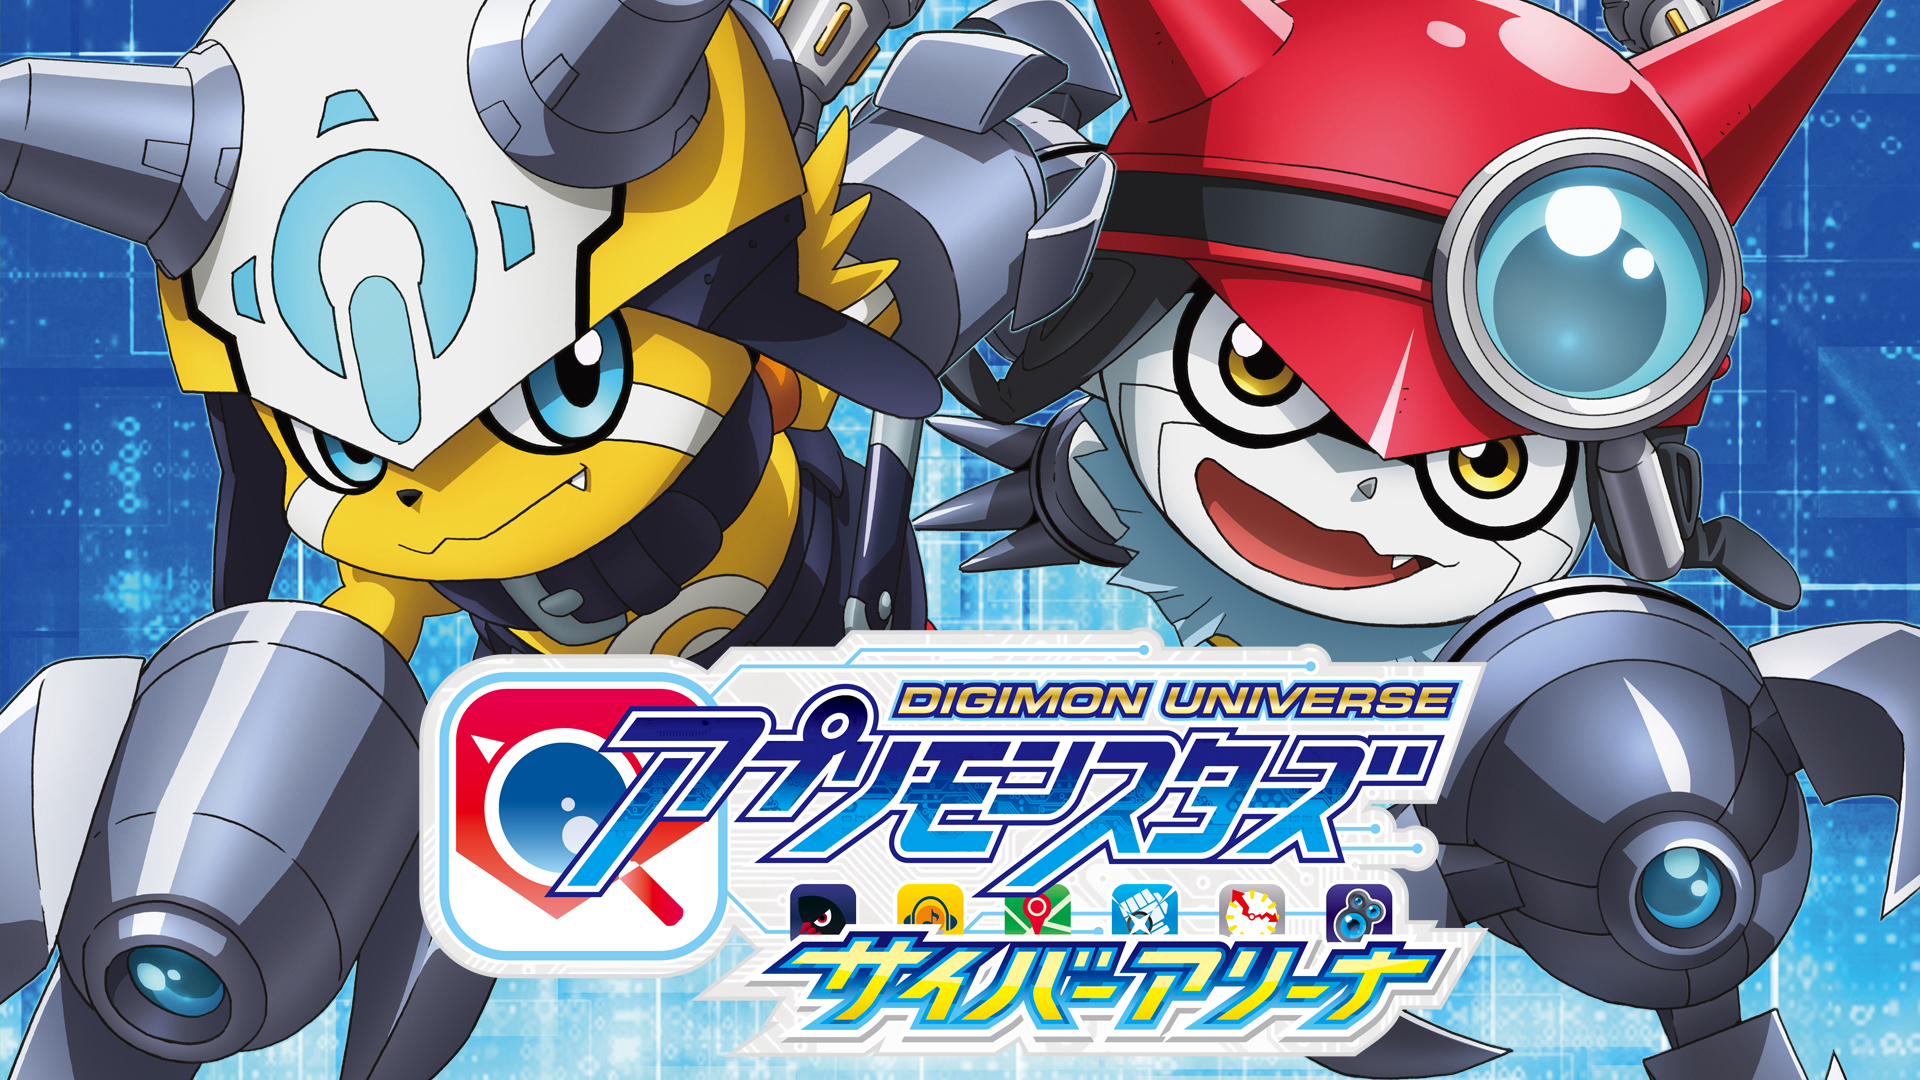 Digimon Universe: Appli Monsters - デジモンユニバース アプリモンスターズ (2017)